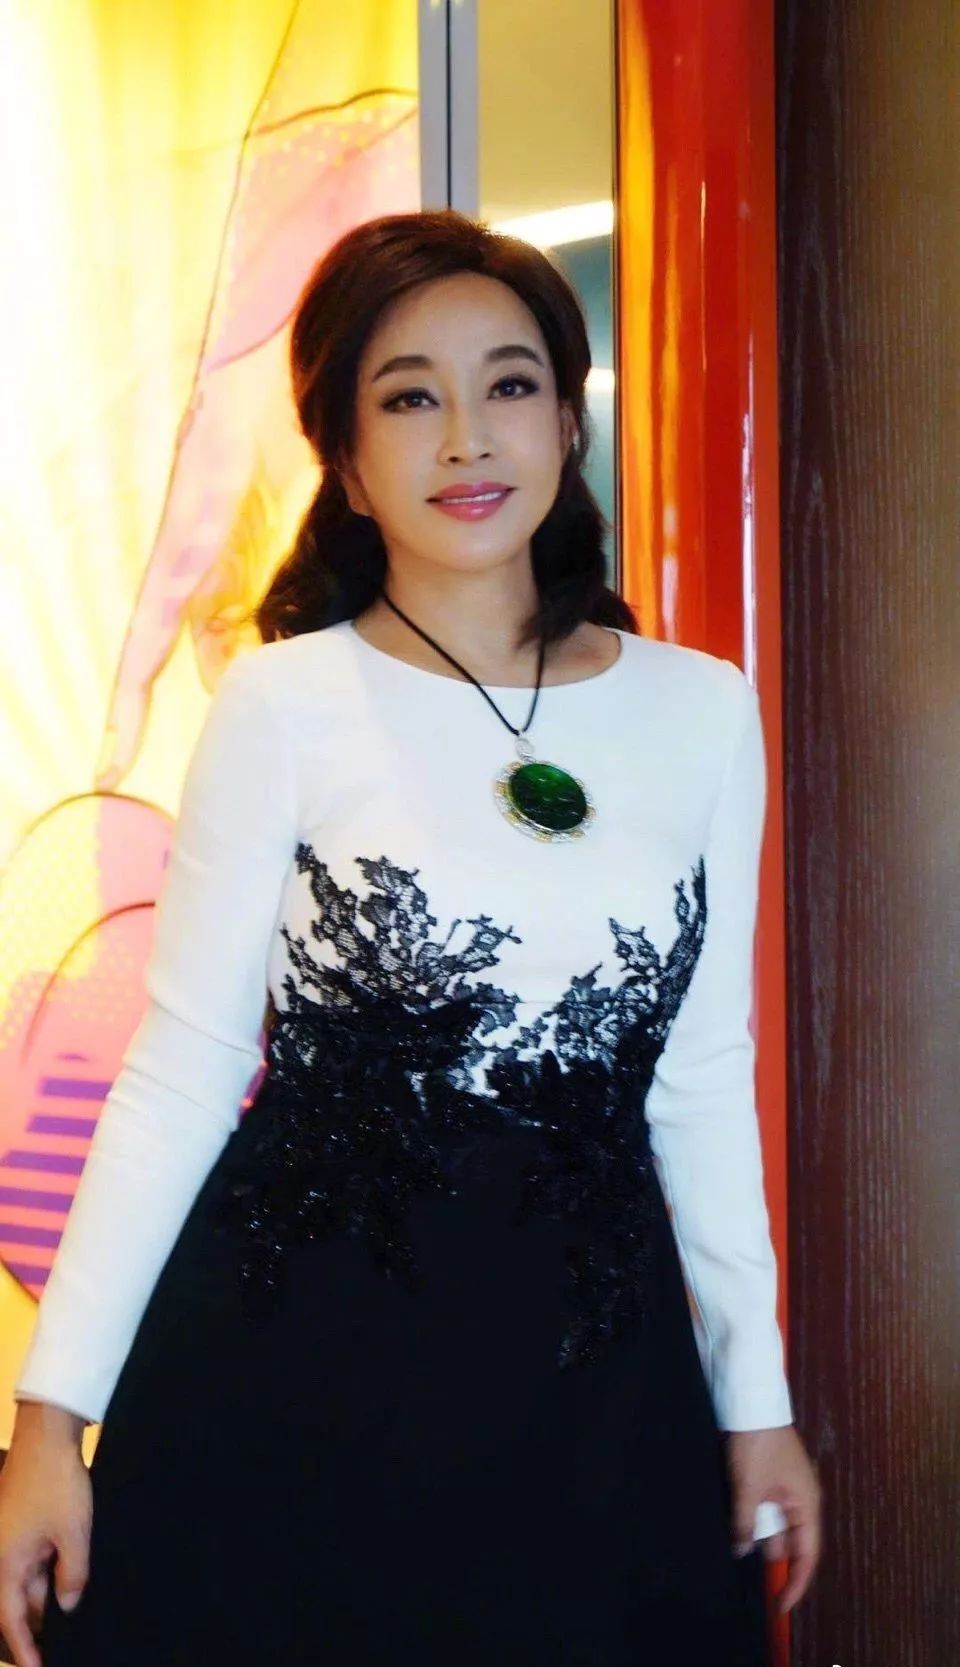 刘晓庆每每现身都戴巨型翡翠项链,一身贵妇范丰腴的身材更吸睛